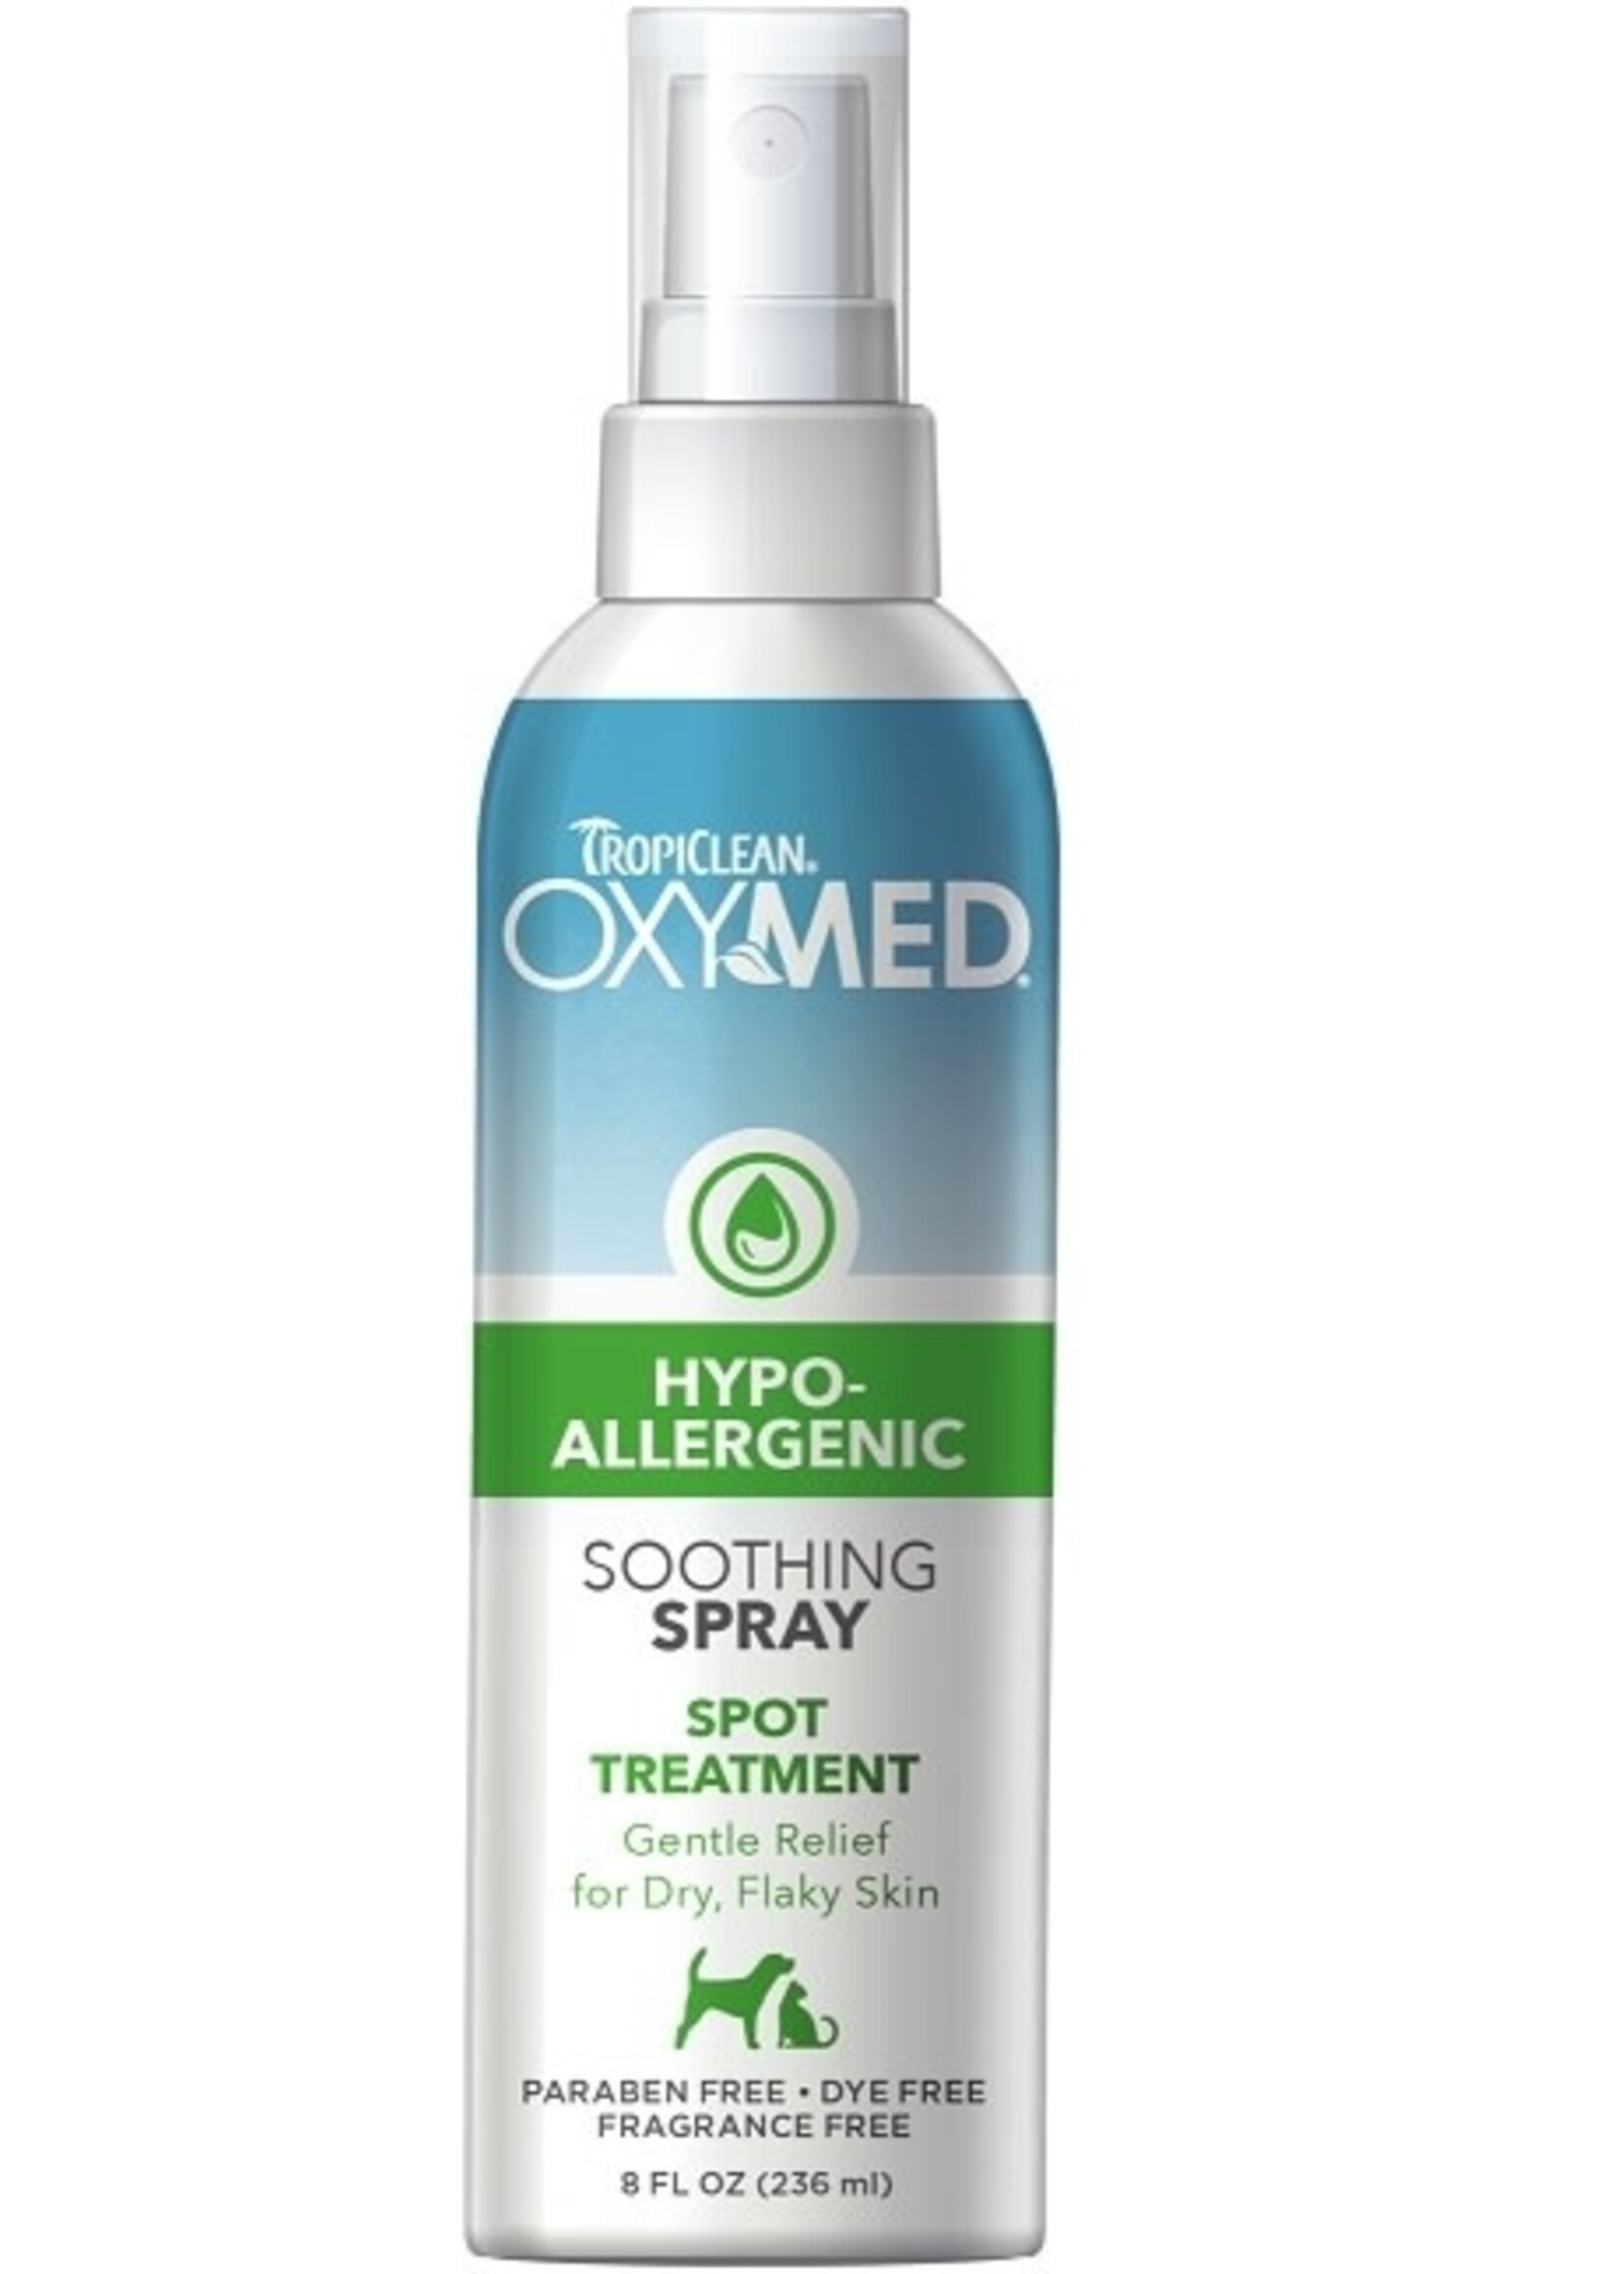 Oxy-Med Hypo-Allergenic Spray